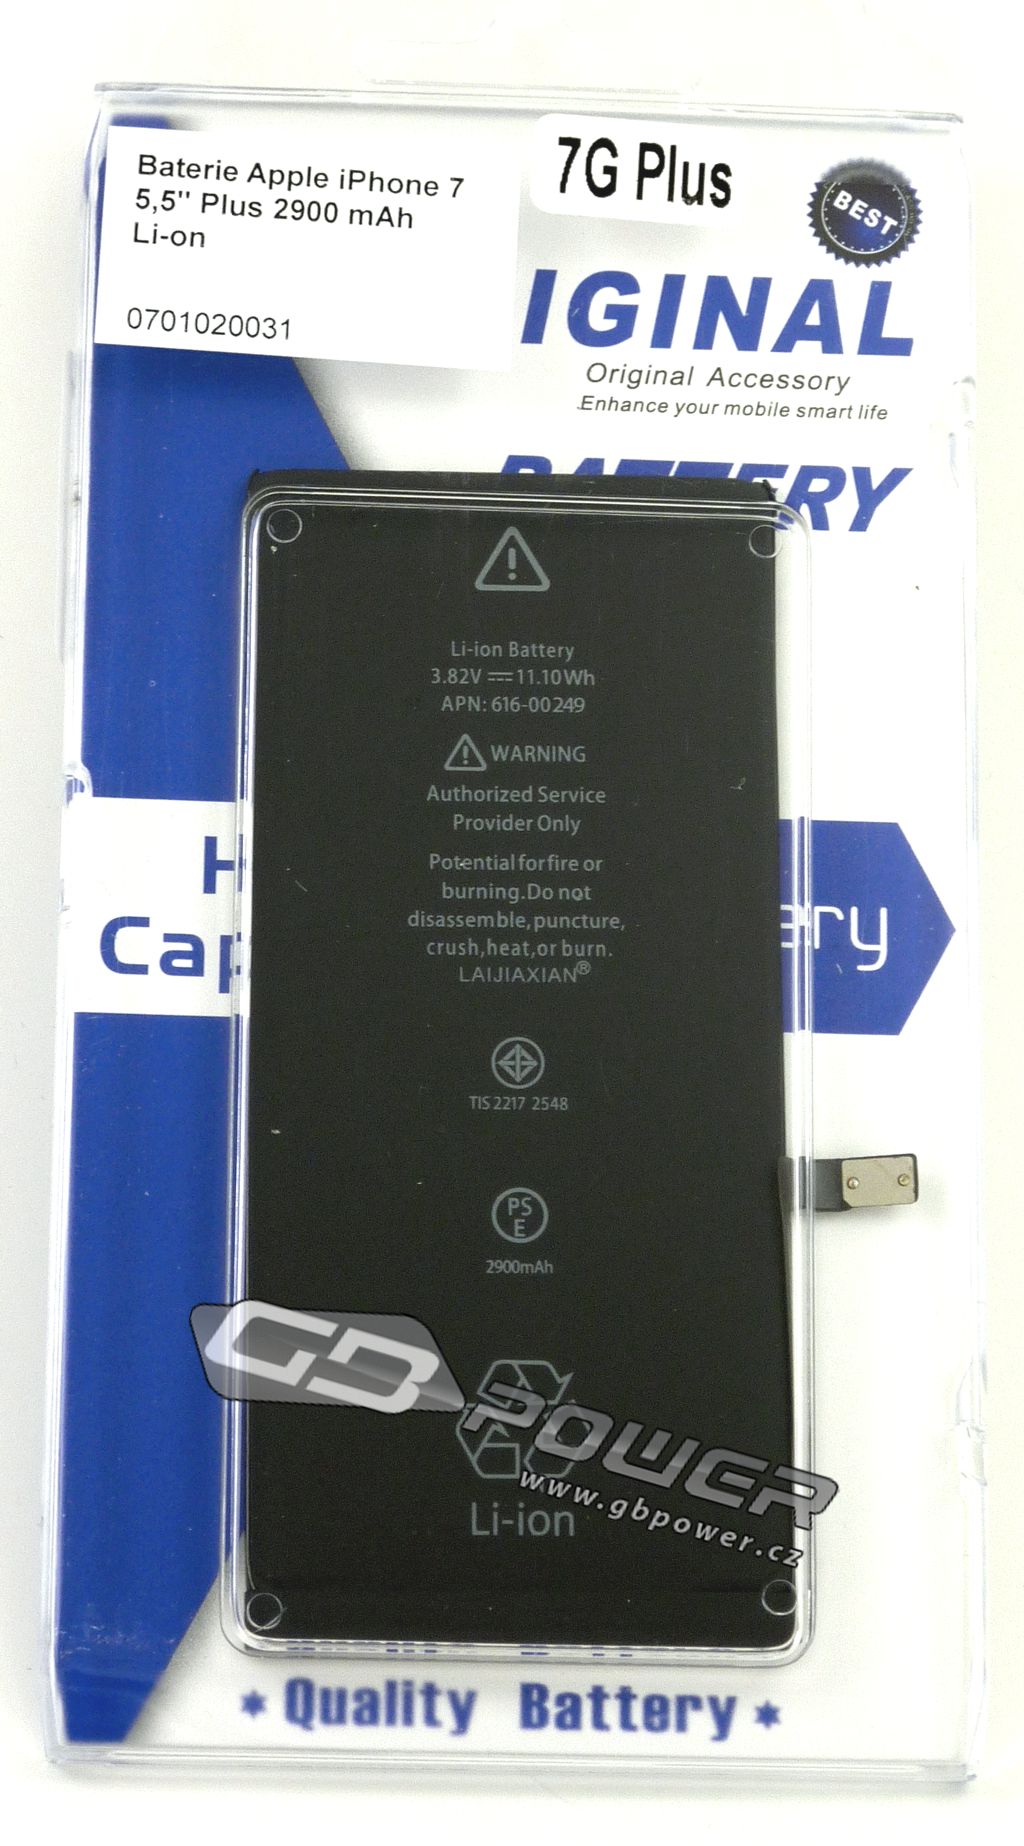 Baterie Apple iPhone 7 5,5 Plus 2900 mAh Li-on